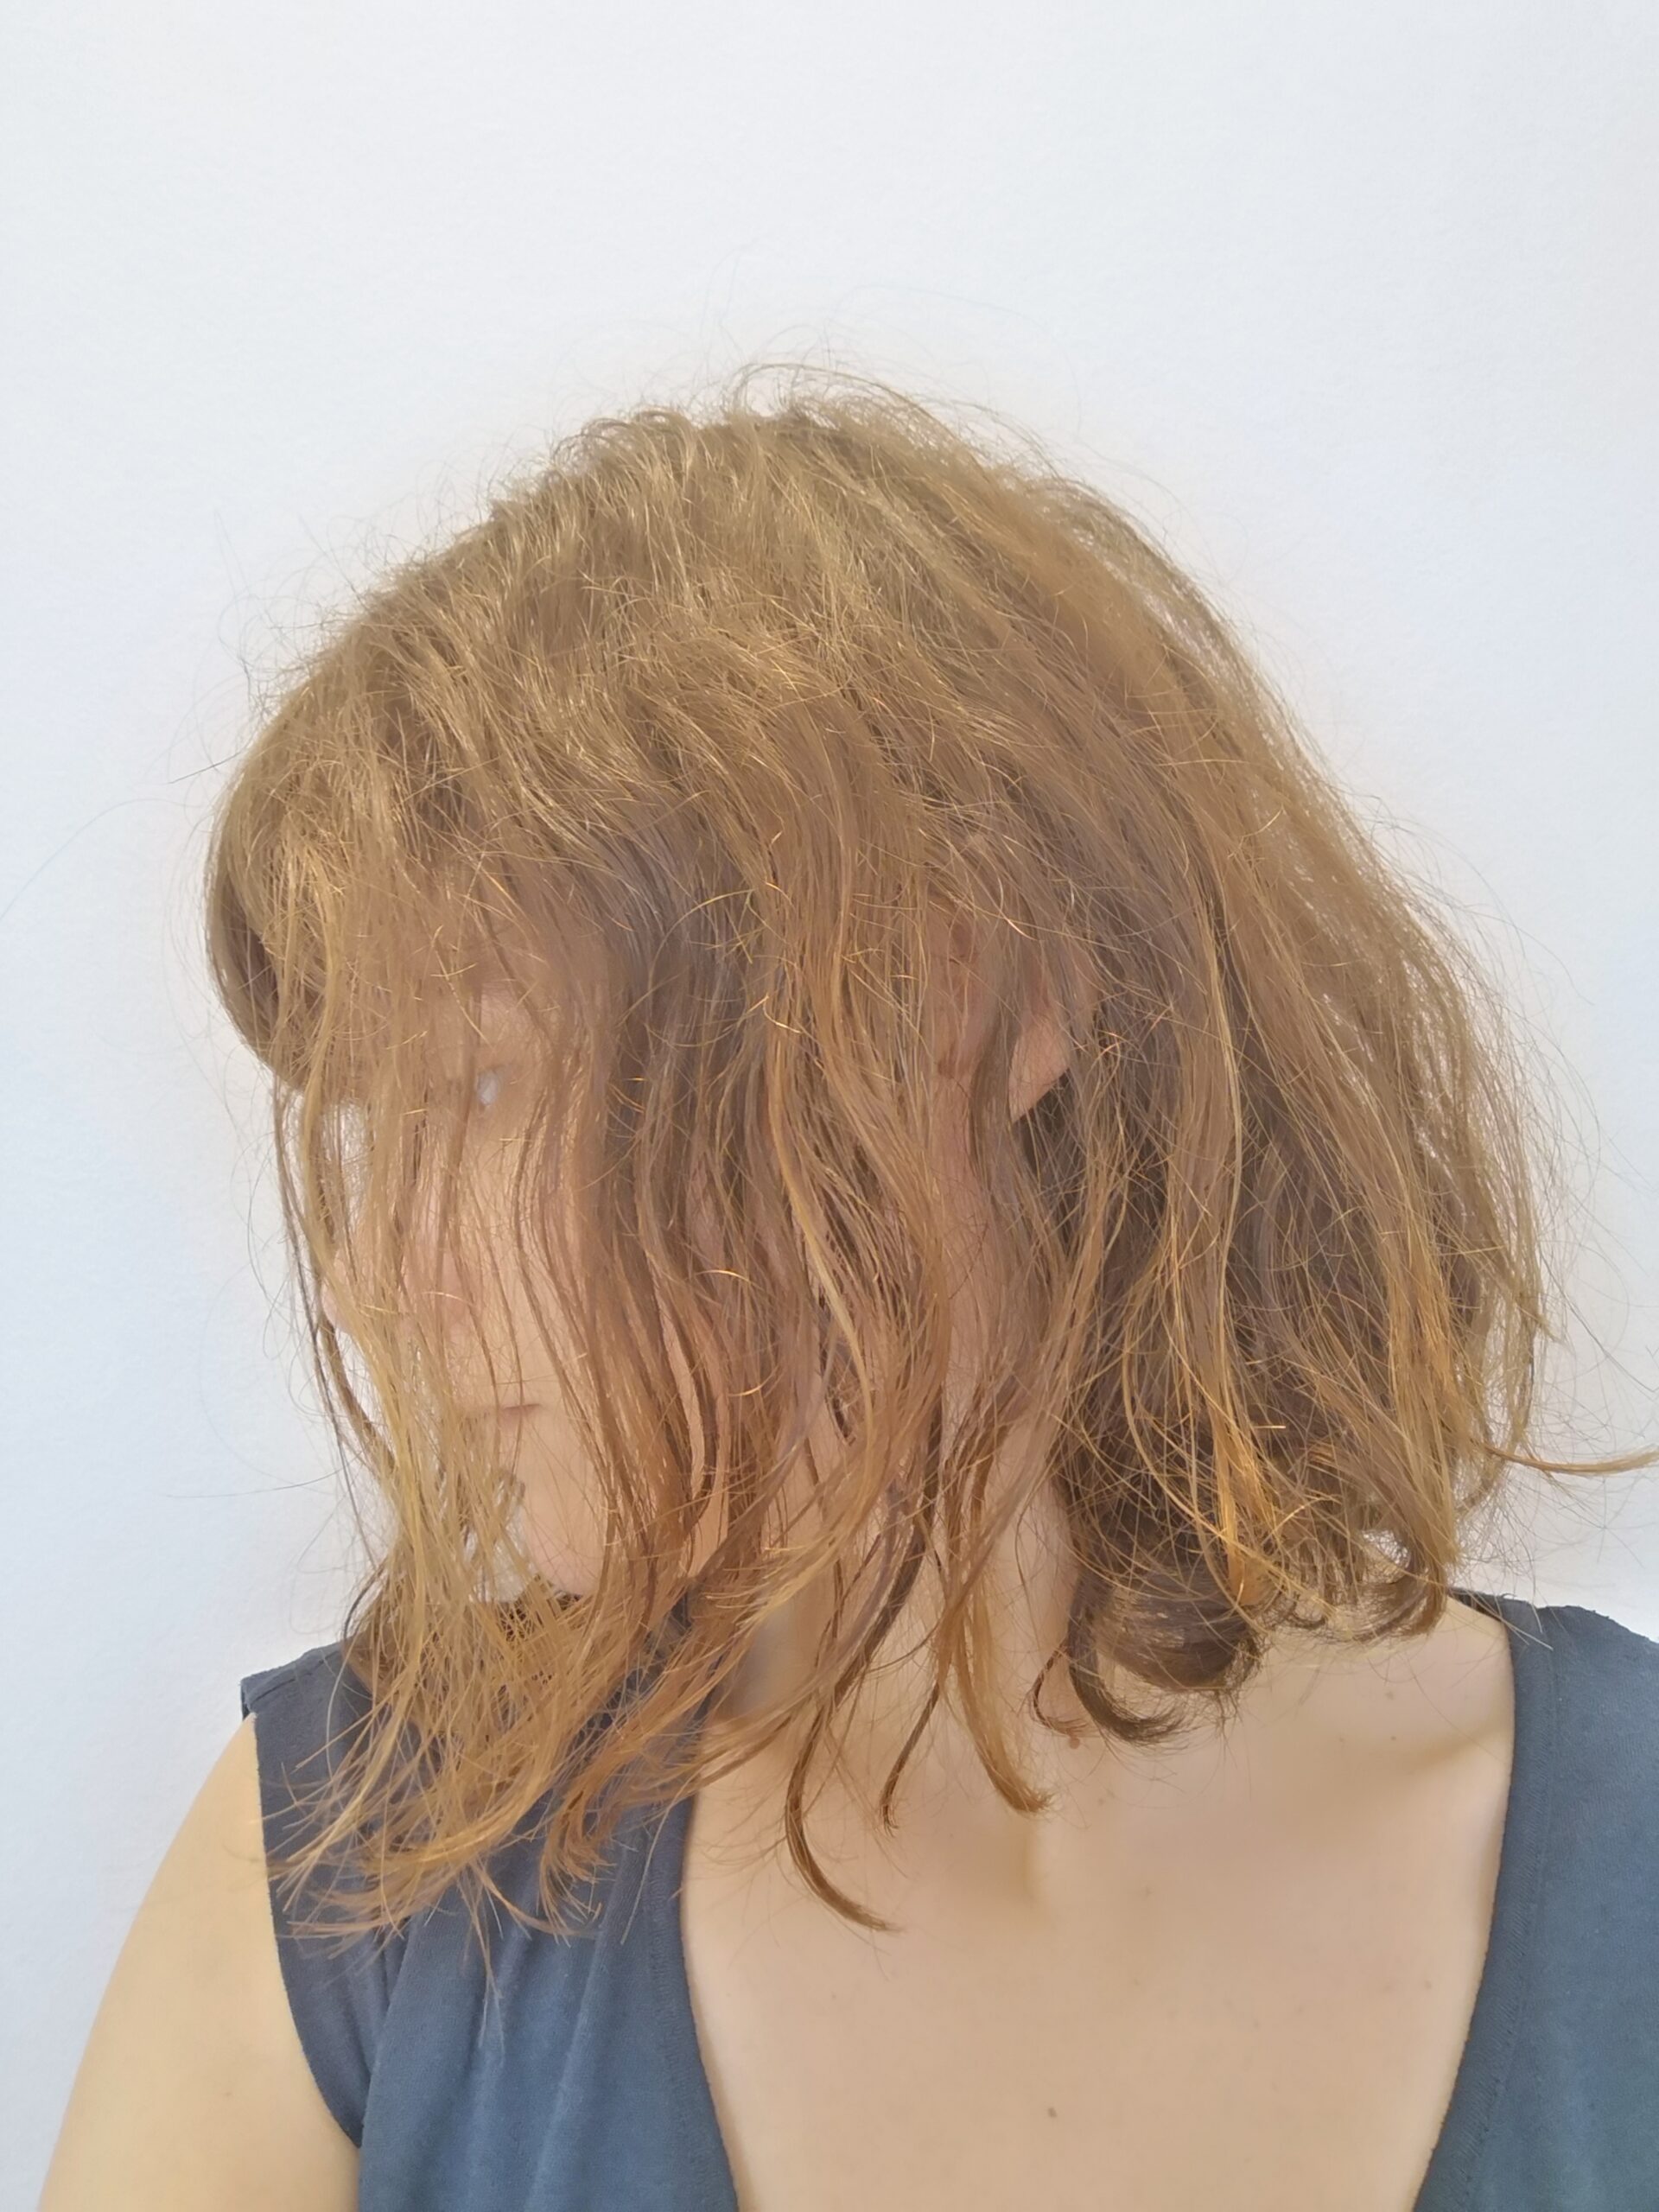 Transition capillaire : état de mes cheveux après l'application de produits entièrement naturels